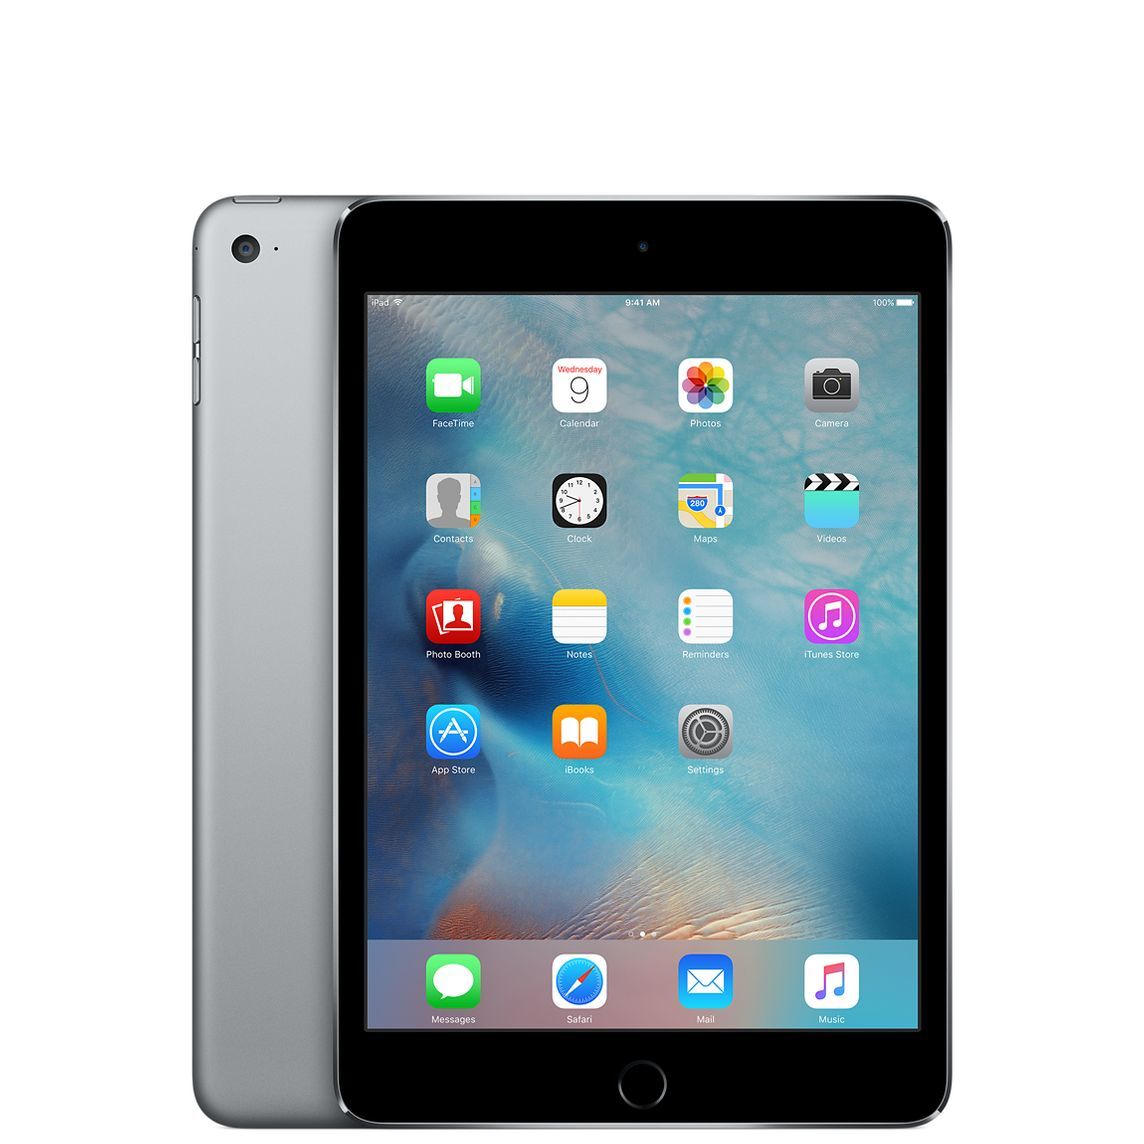 Apple iPad Mini 2 Wi-Fi 16GB Space Gray Full Size Image